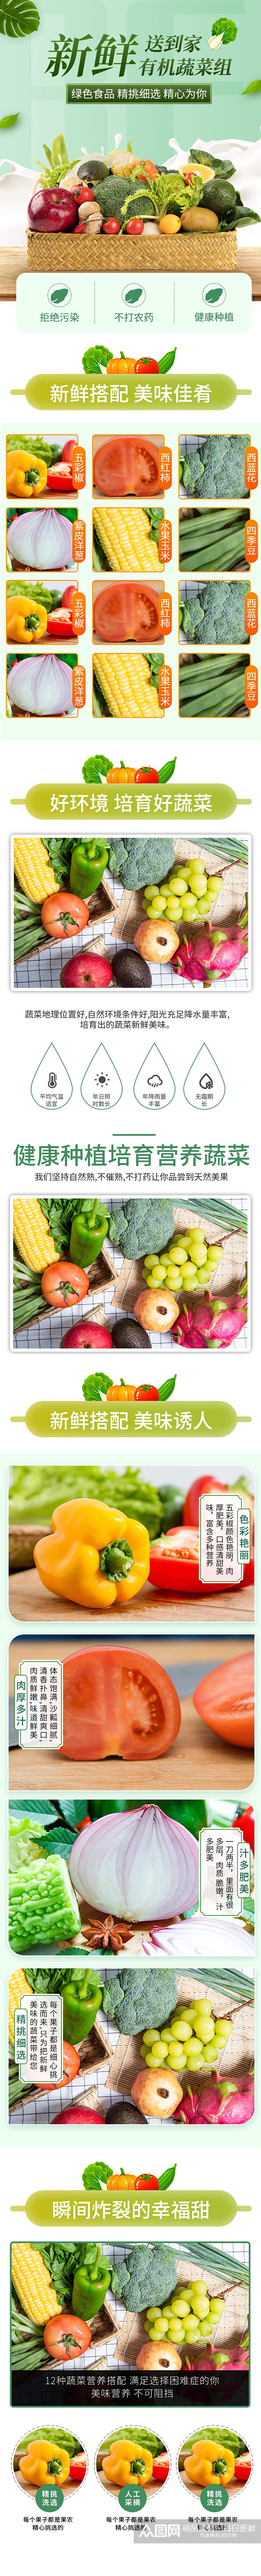 小清新鲜蔬菜组合美食详情页素材